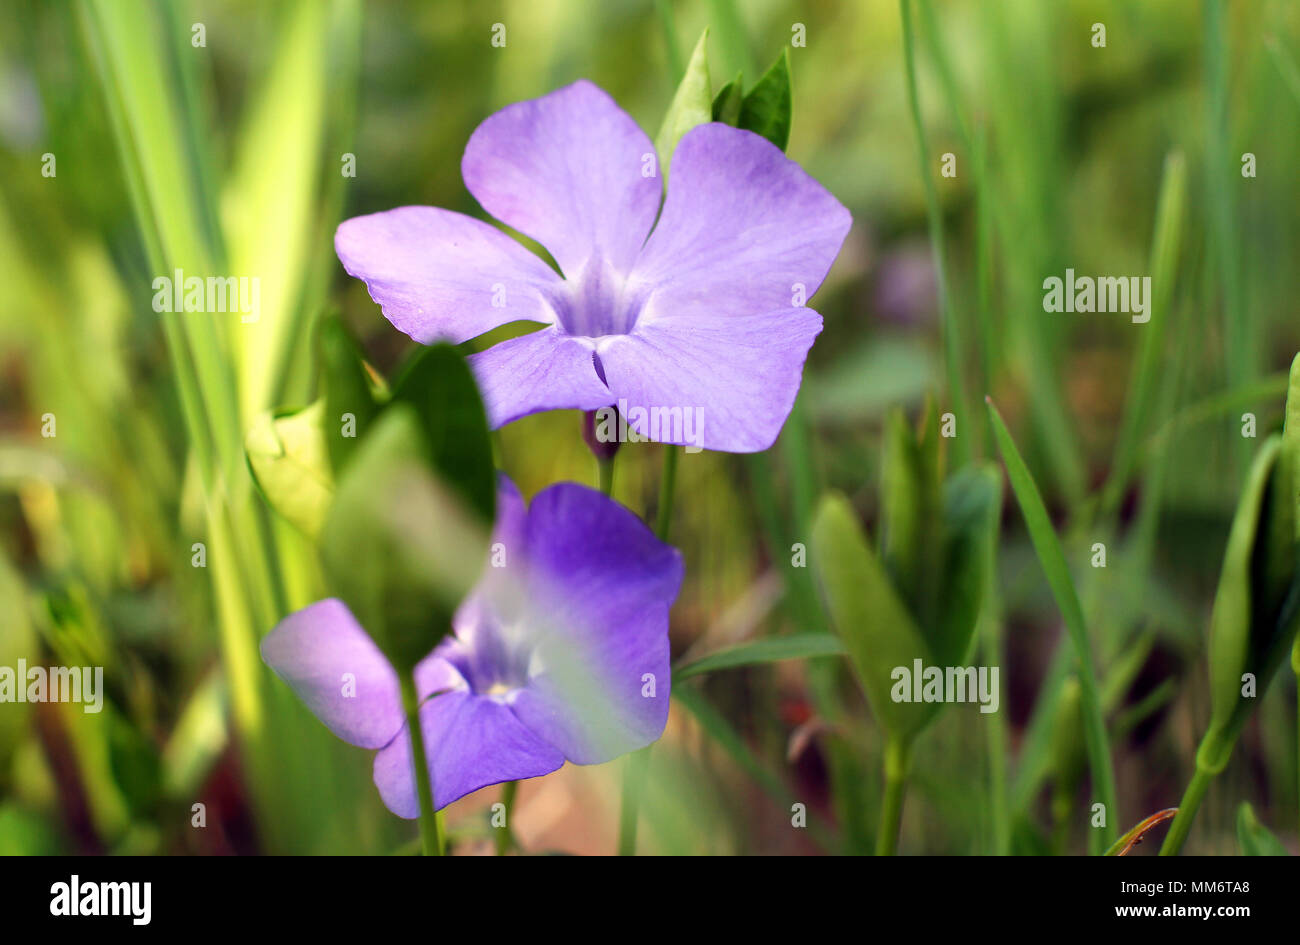 Violet macro photo. Violette fleur forêt close-up. Photo macro d'une fleur  forêt Viola odorata. Une photo de fleurs de forêt sur une clairière, un  jour ensoleillé Photo Stock - Alamy